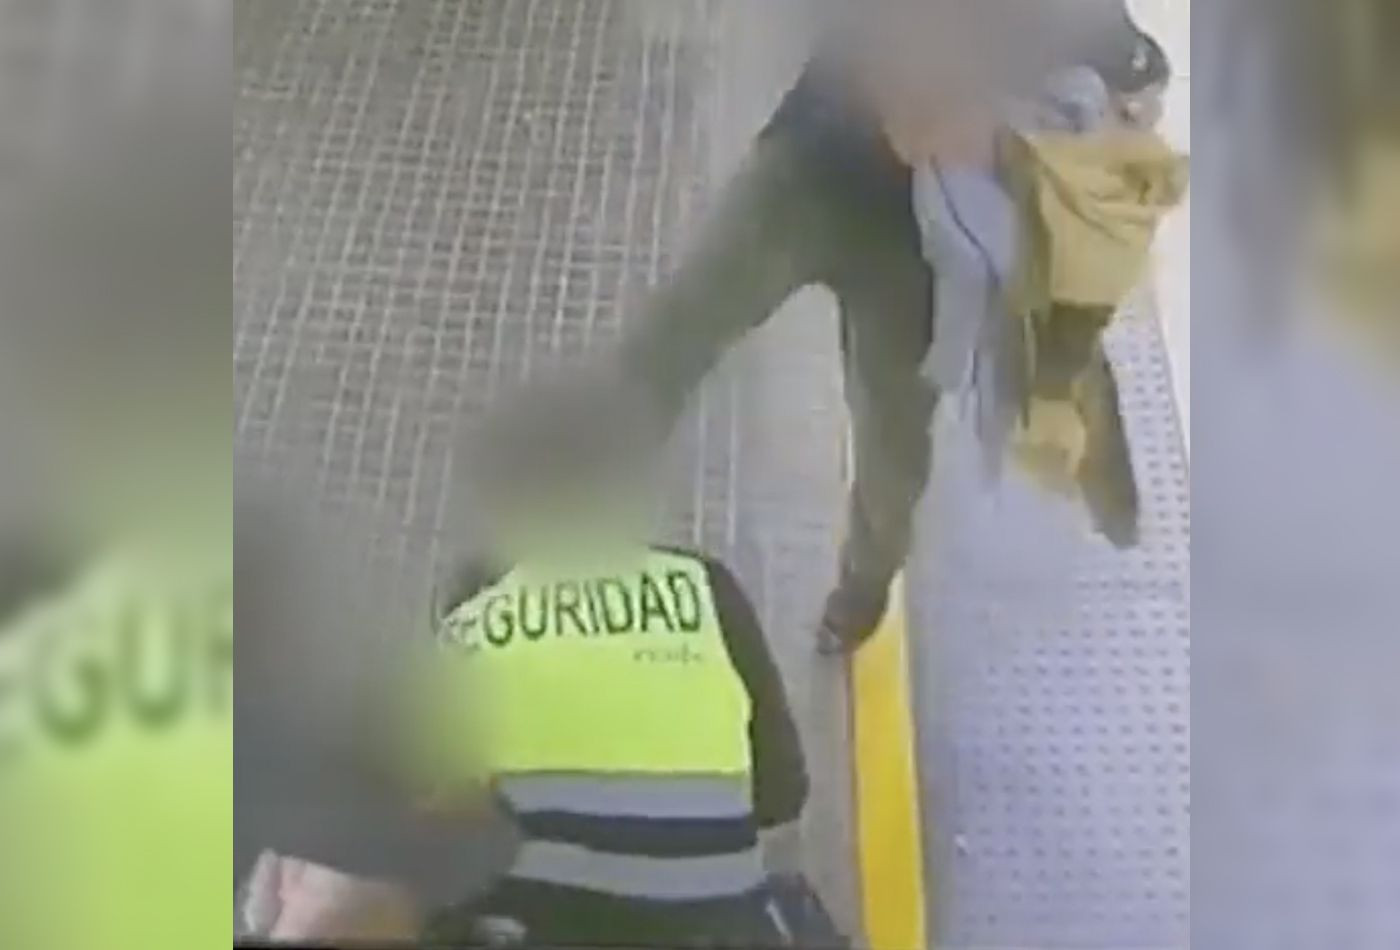 Así fue la brutal agresión que dejó inconsciente a un vigilante de Rodalies en Mataró / MOSSOS D'ESQUADRA 